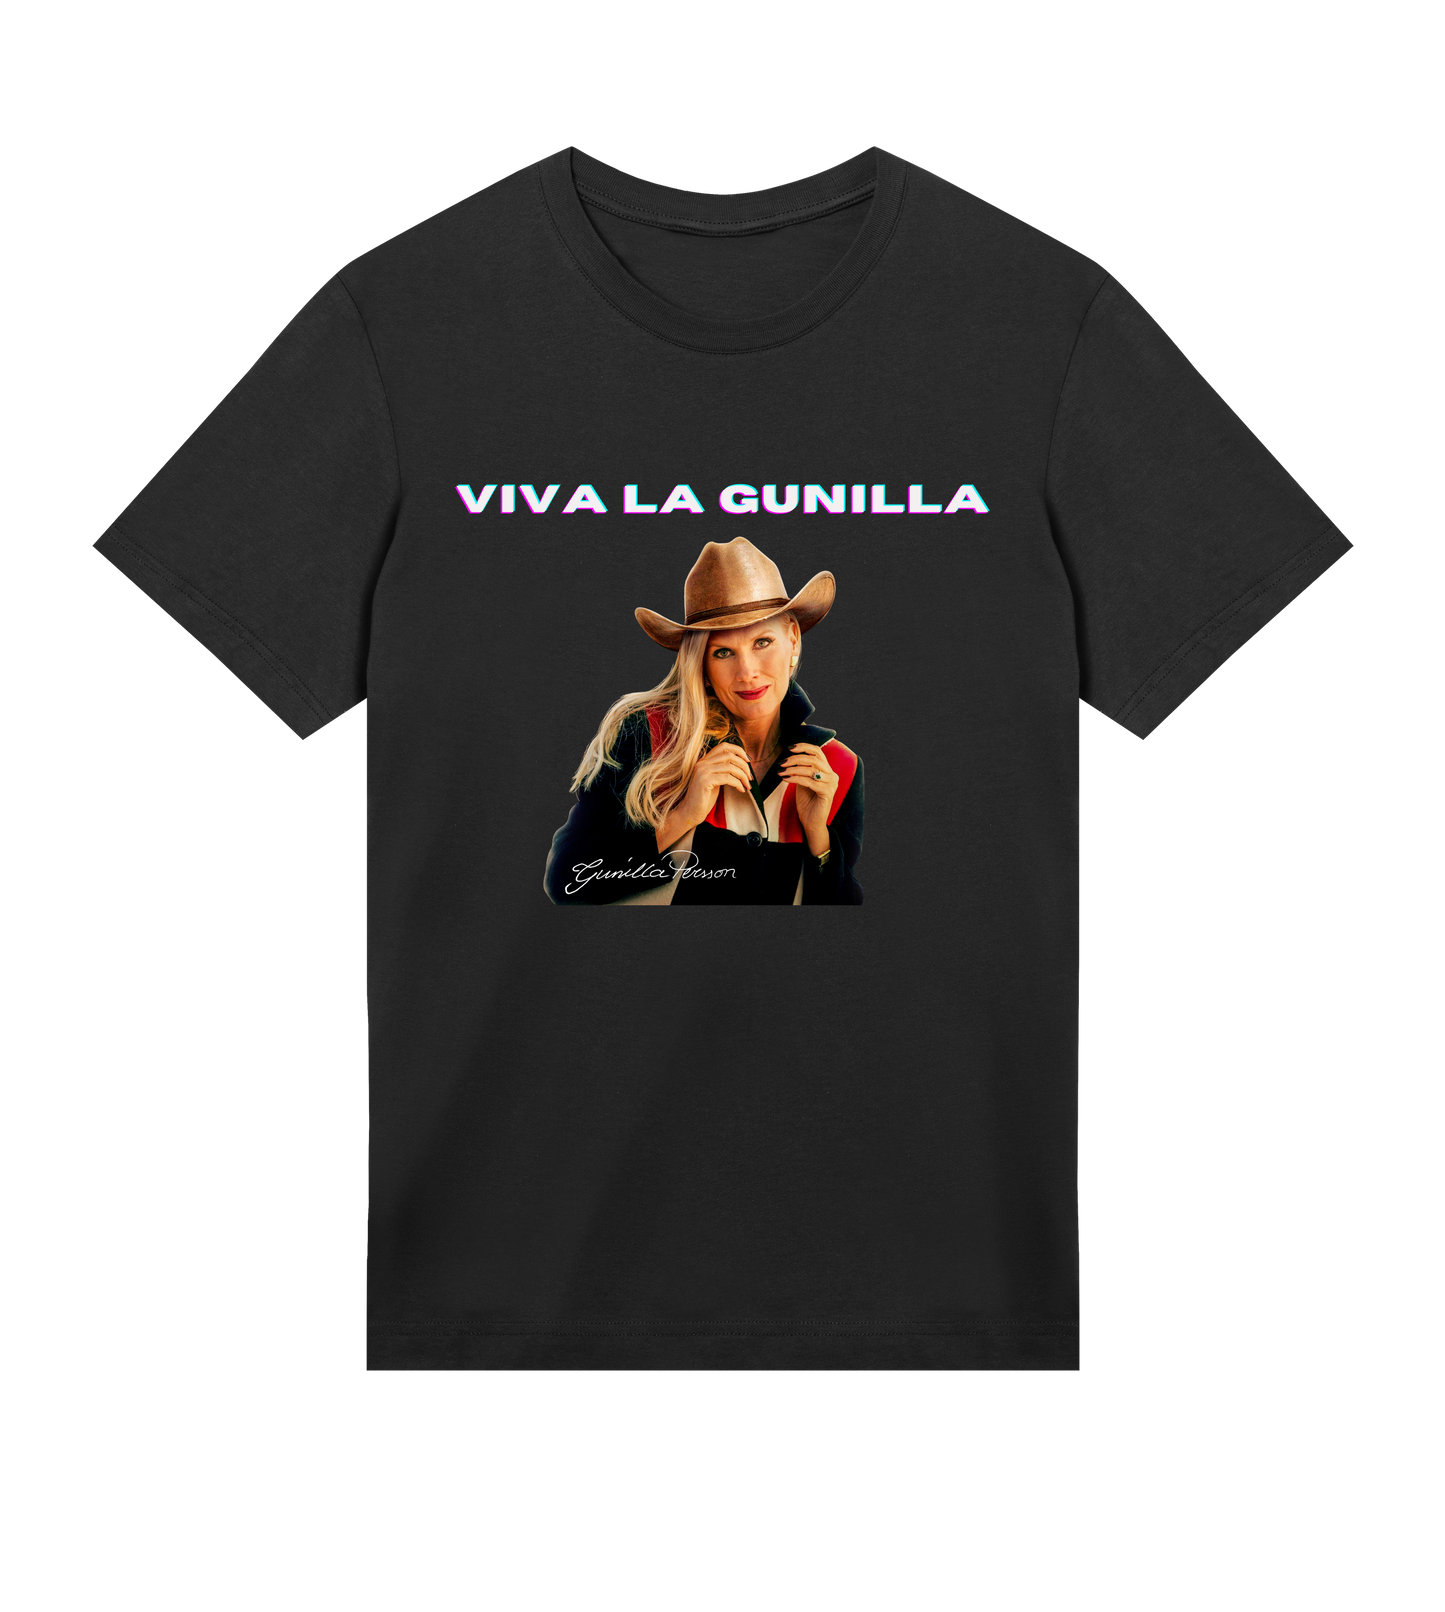 Viva La Gunilla T-shirt